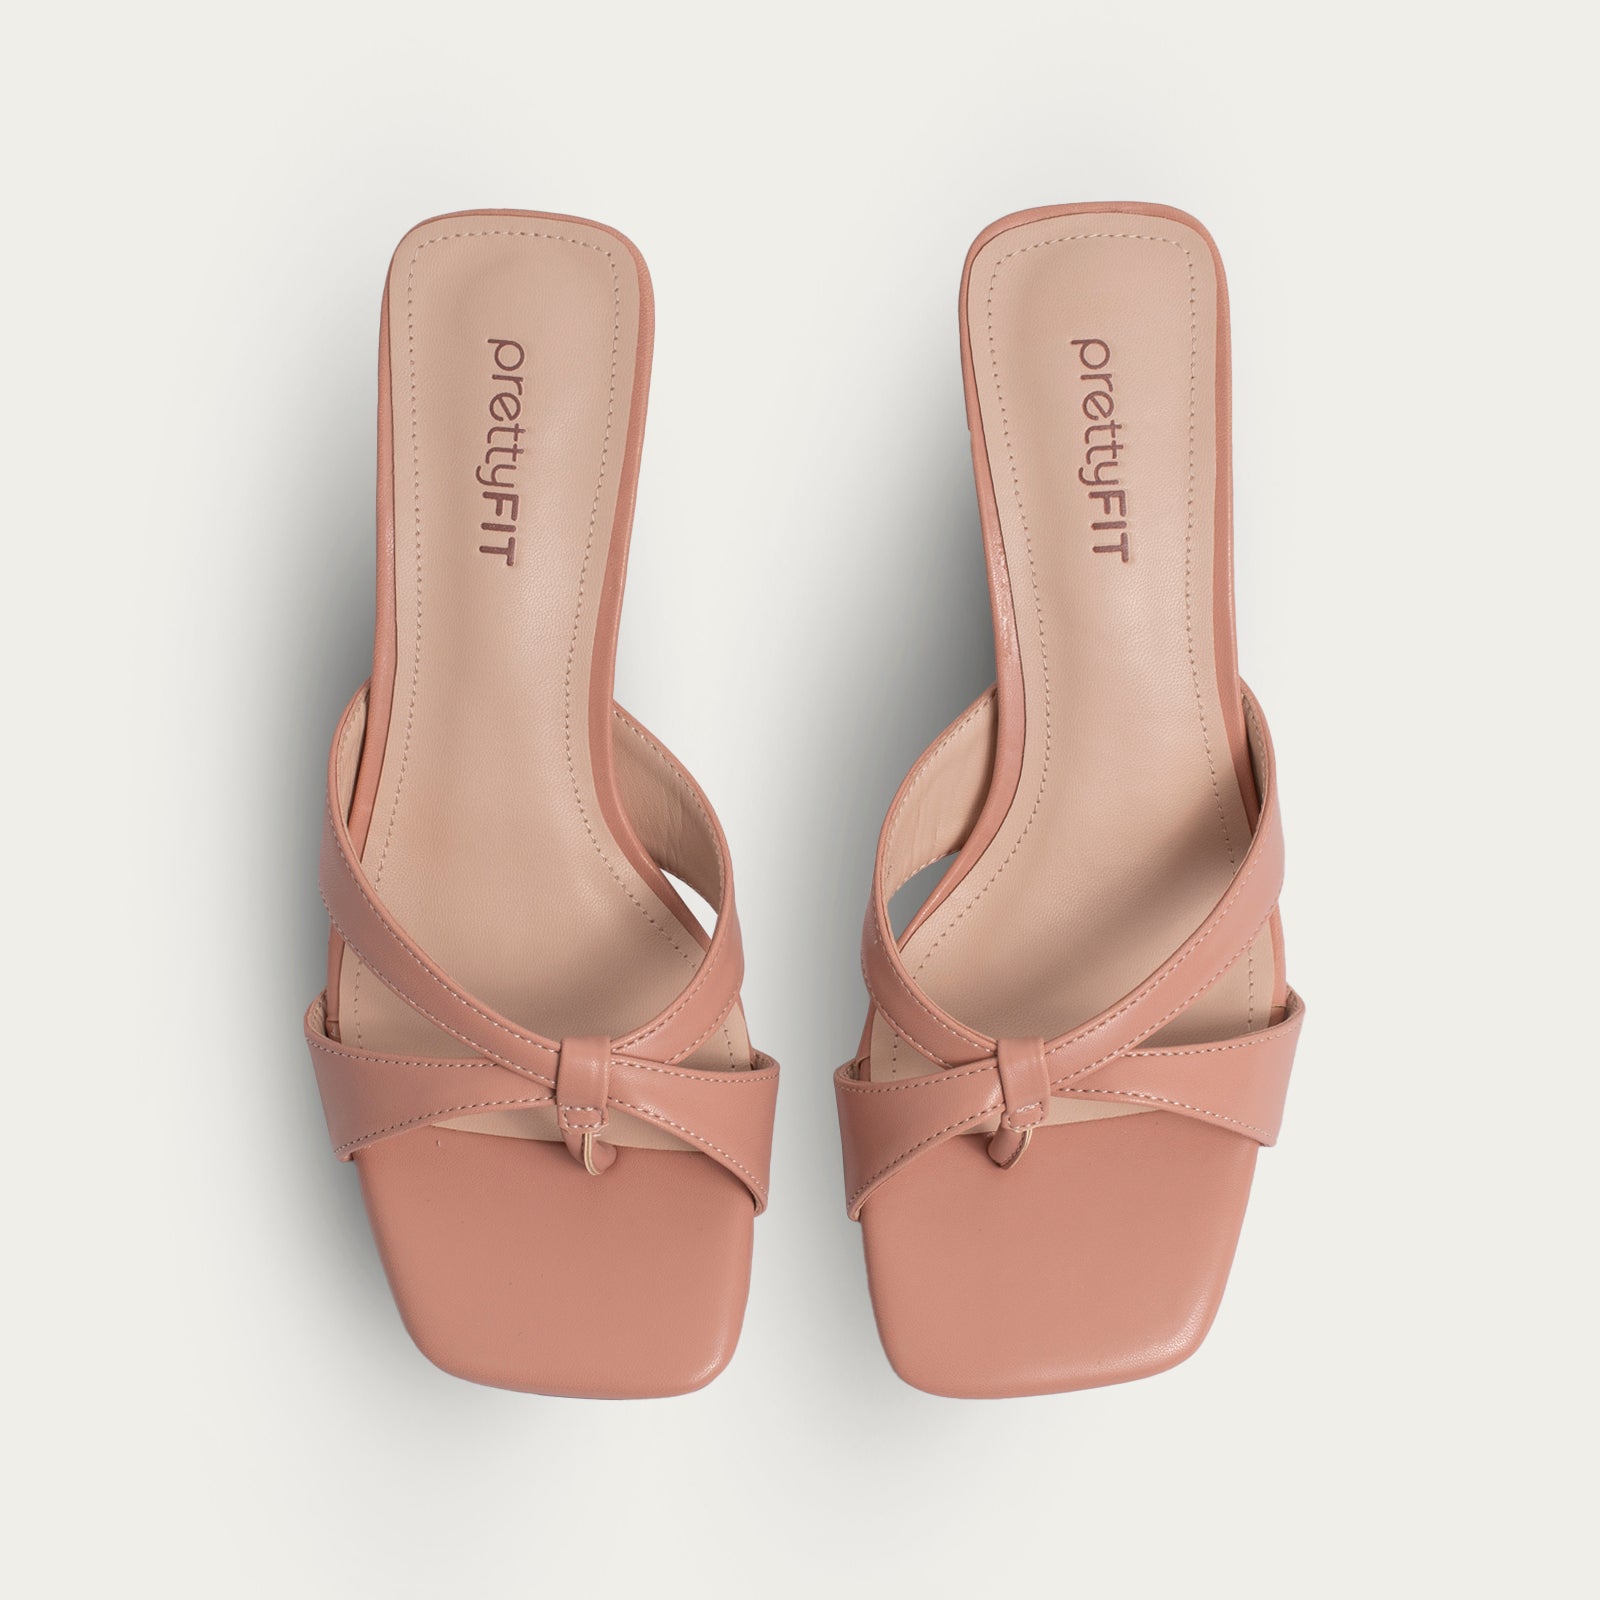 Taria Sandals